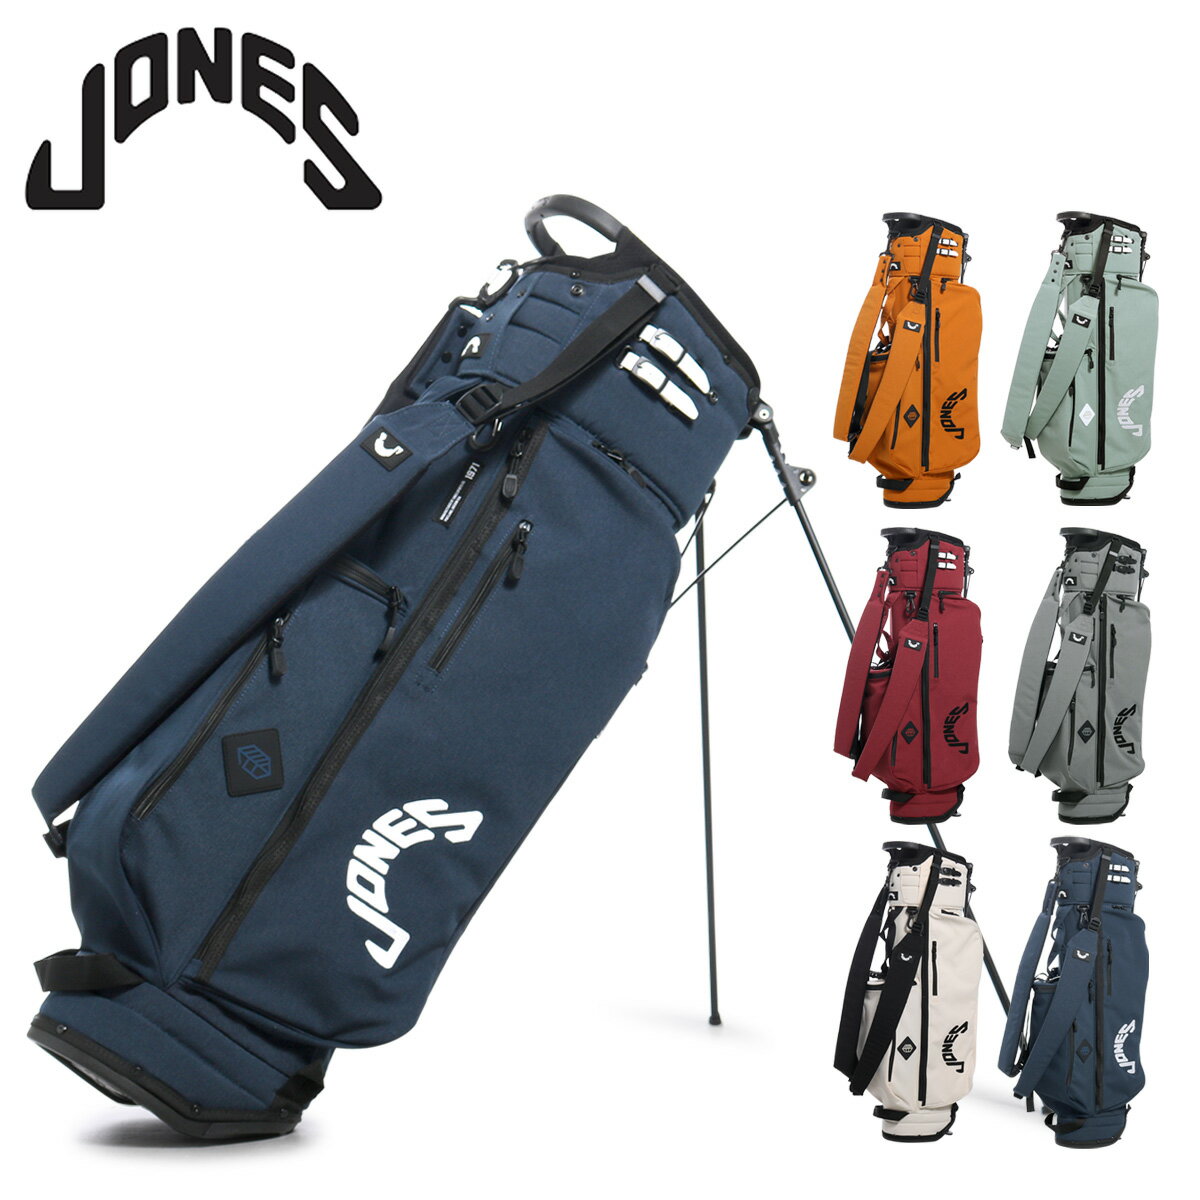 ジョーンズ ゴルフ キャディバッグ スタンド型 5分割 9型 46インチ 2.6kg トゥルーパー メンズ JONES TROUPER-R 軽量 保冷ポケット[即日発送]